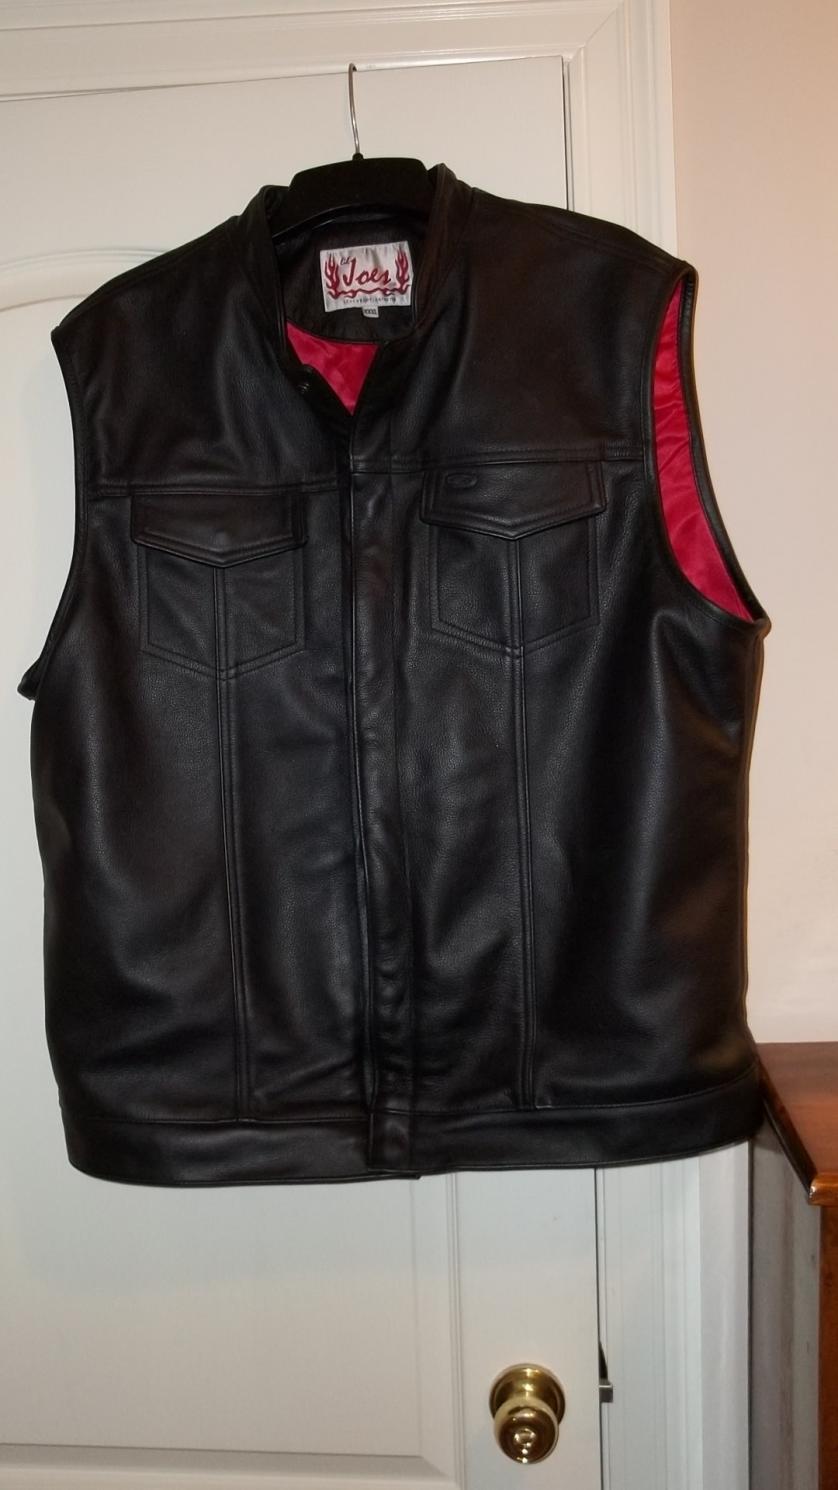 Lil joe's soa vest 3x extra long - Harley Davidson Forums